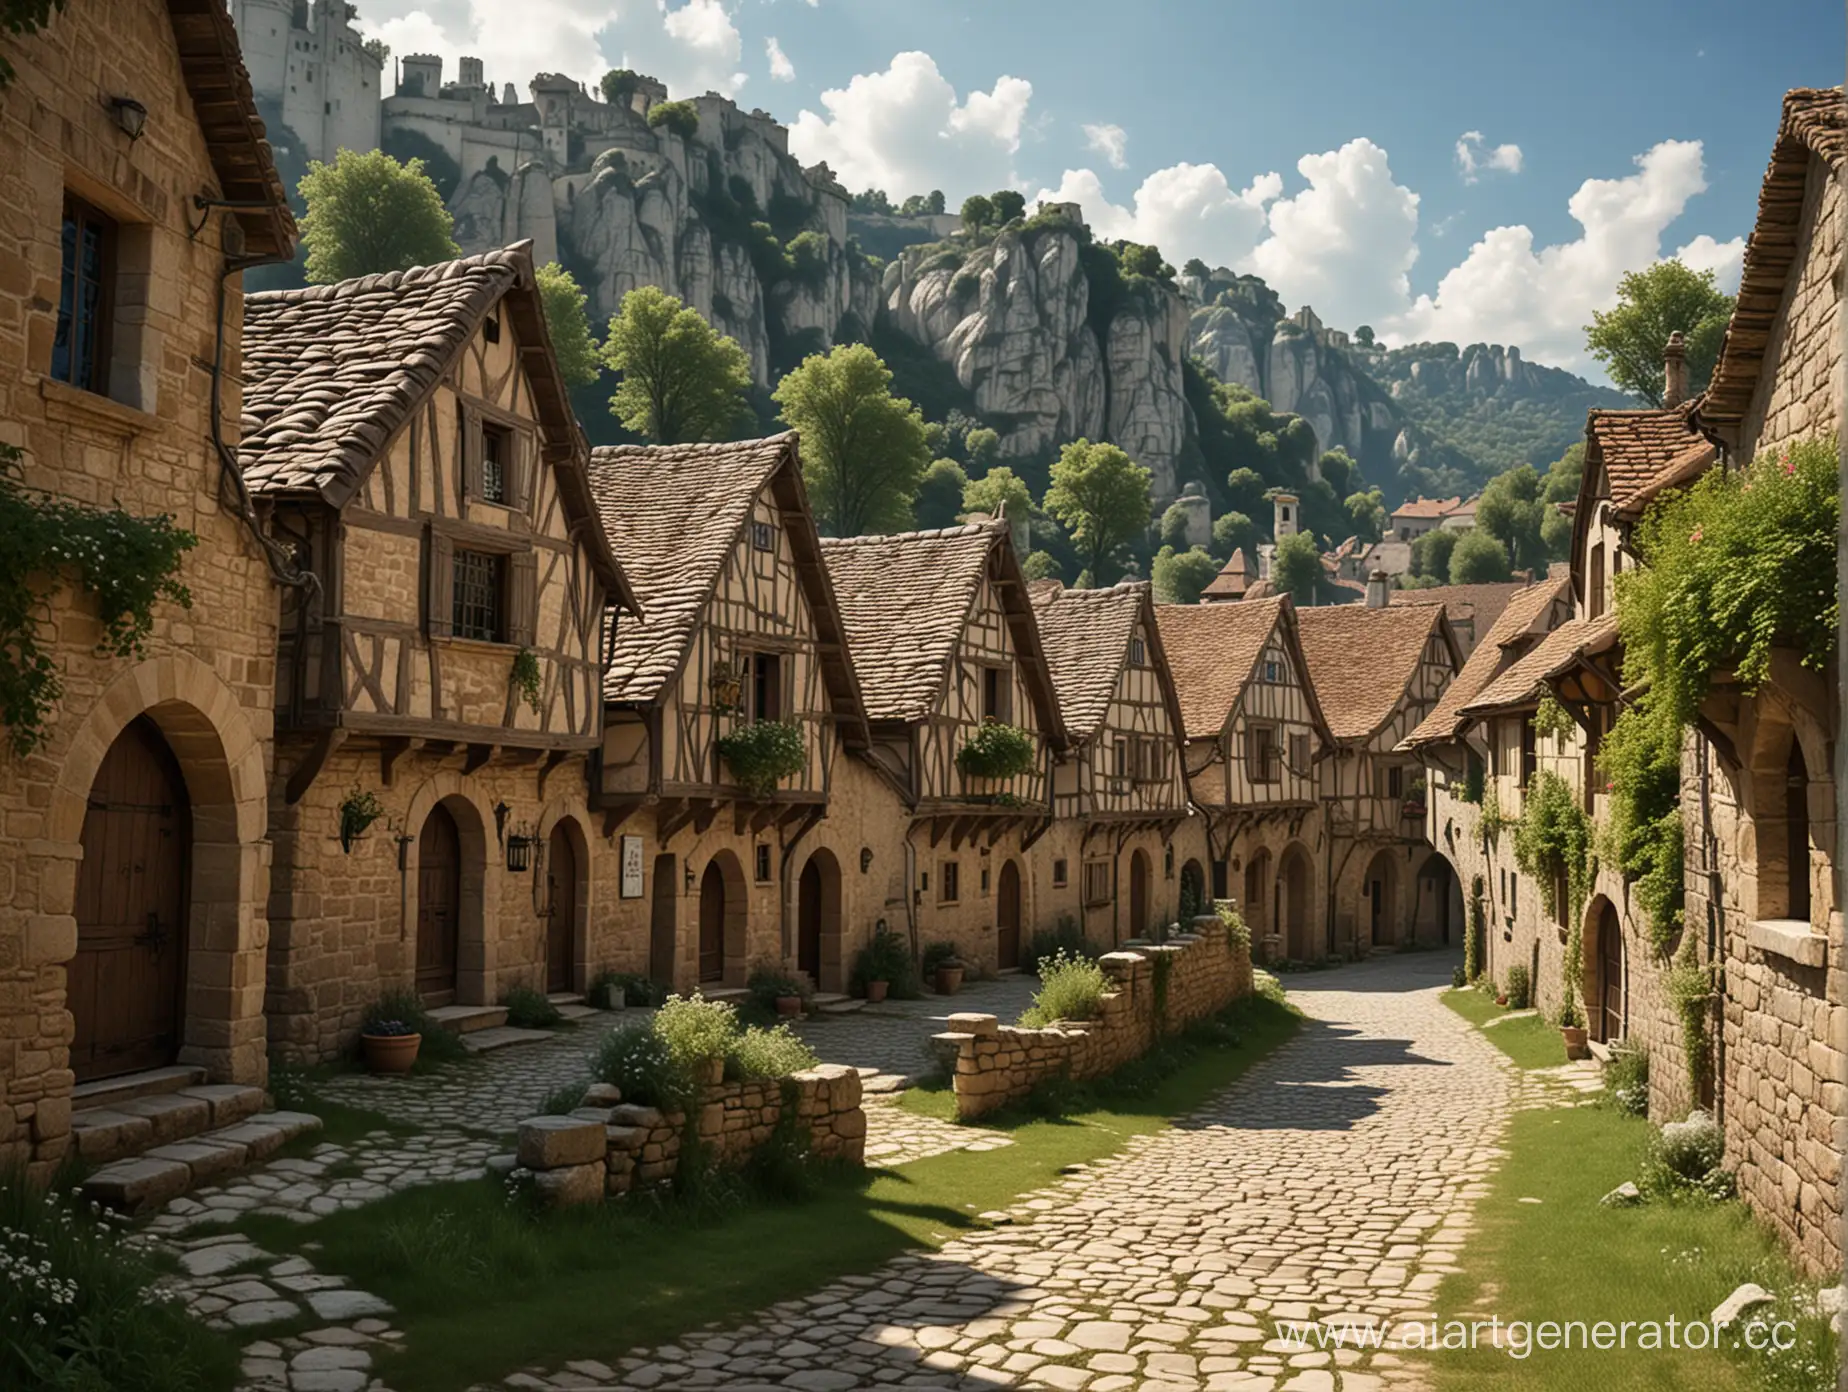 Нарисуй мне деревню среднего размера  в средневековом стиле вокруг которого возведены каменные магические стены  полностью